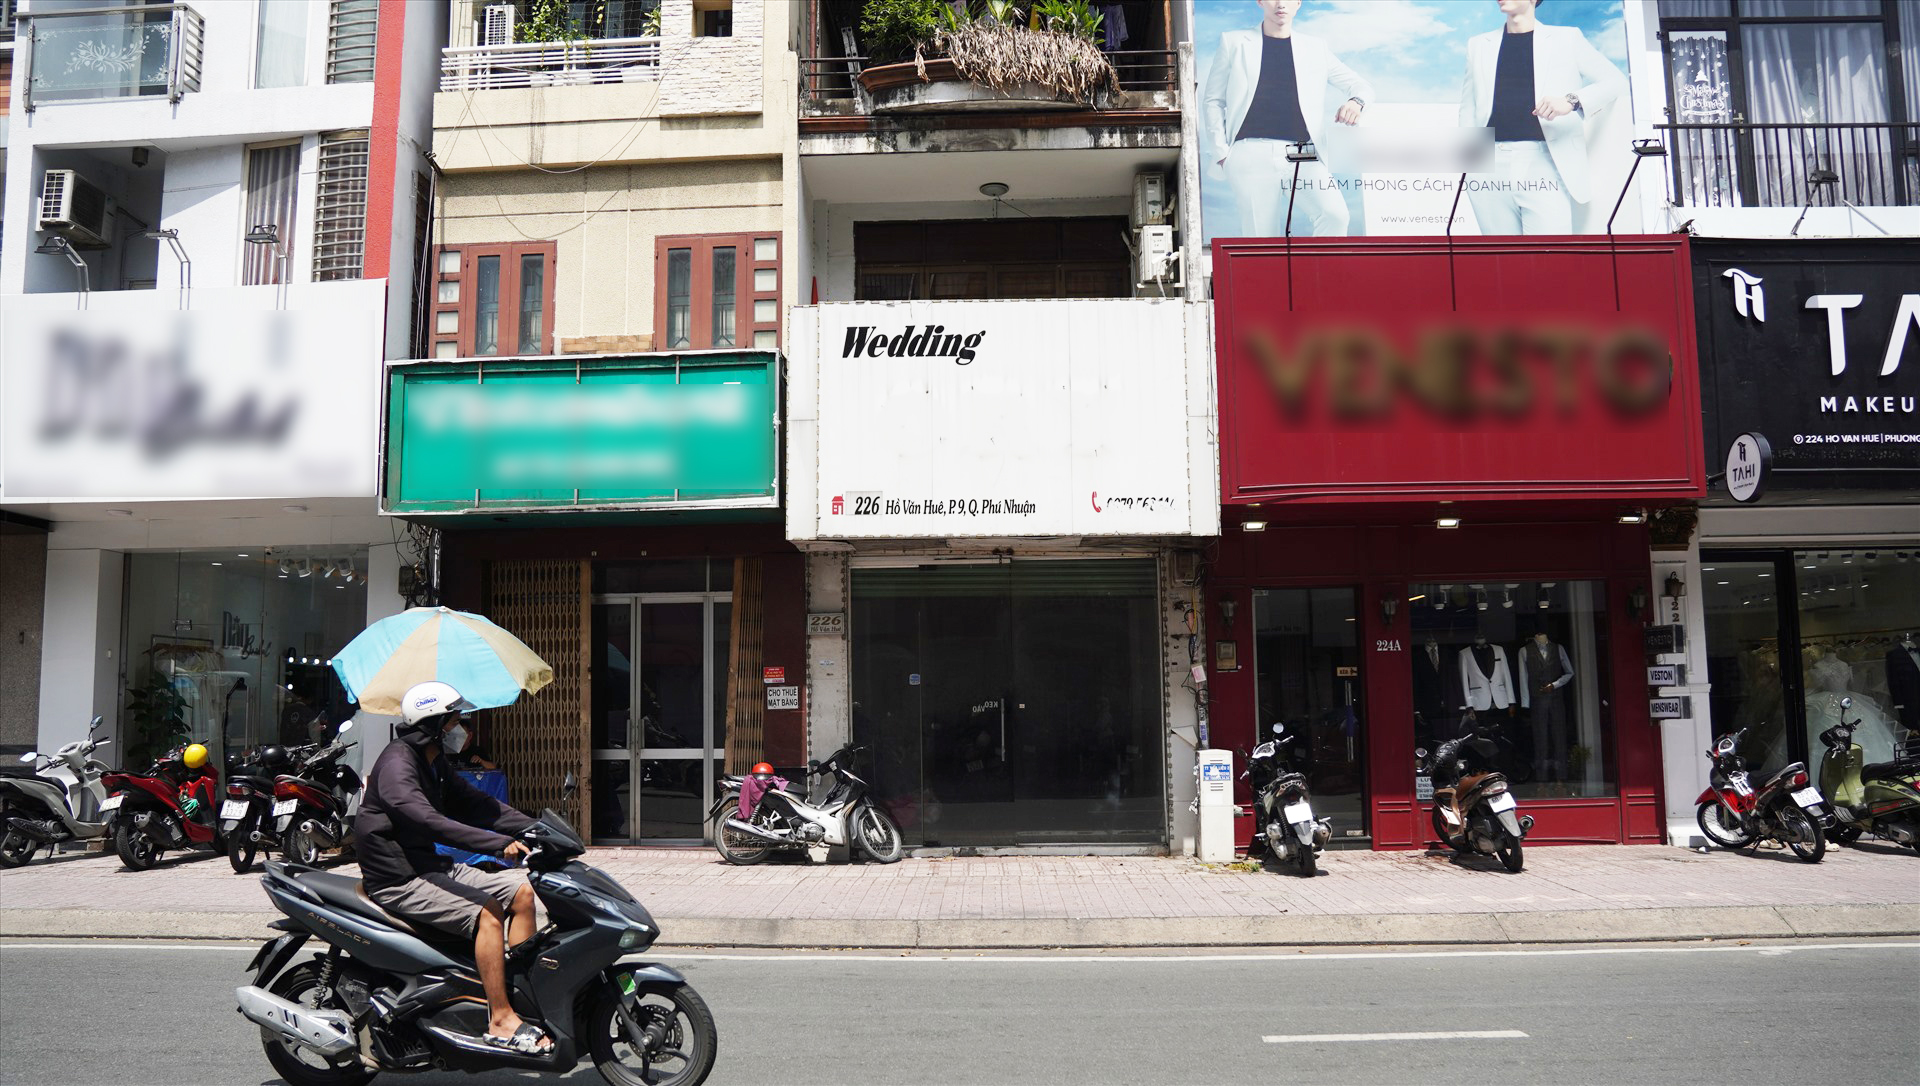 Danh sách các cửa hàng dịch vụ cưới trên đường Hồ Văn Huê  Dianthus  Wedding Decor based in Saigon Vietnam